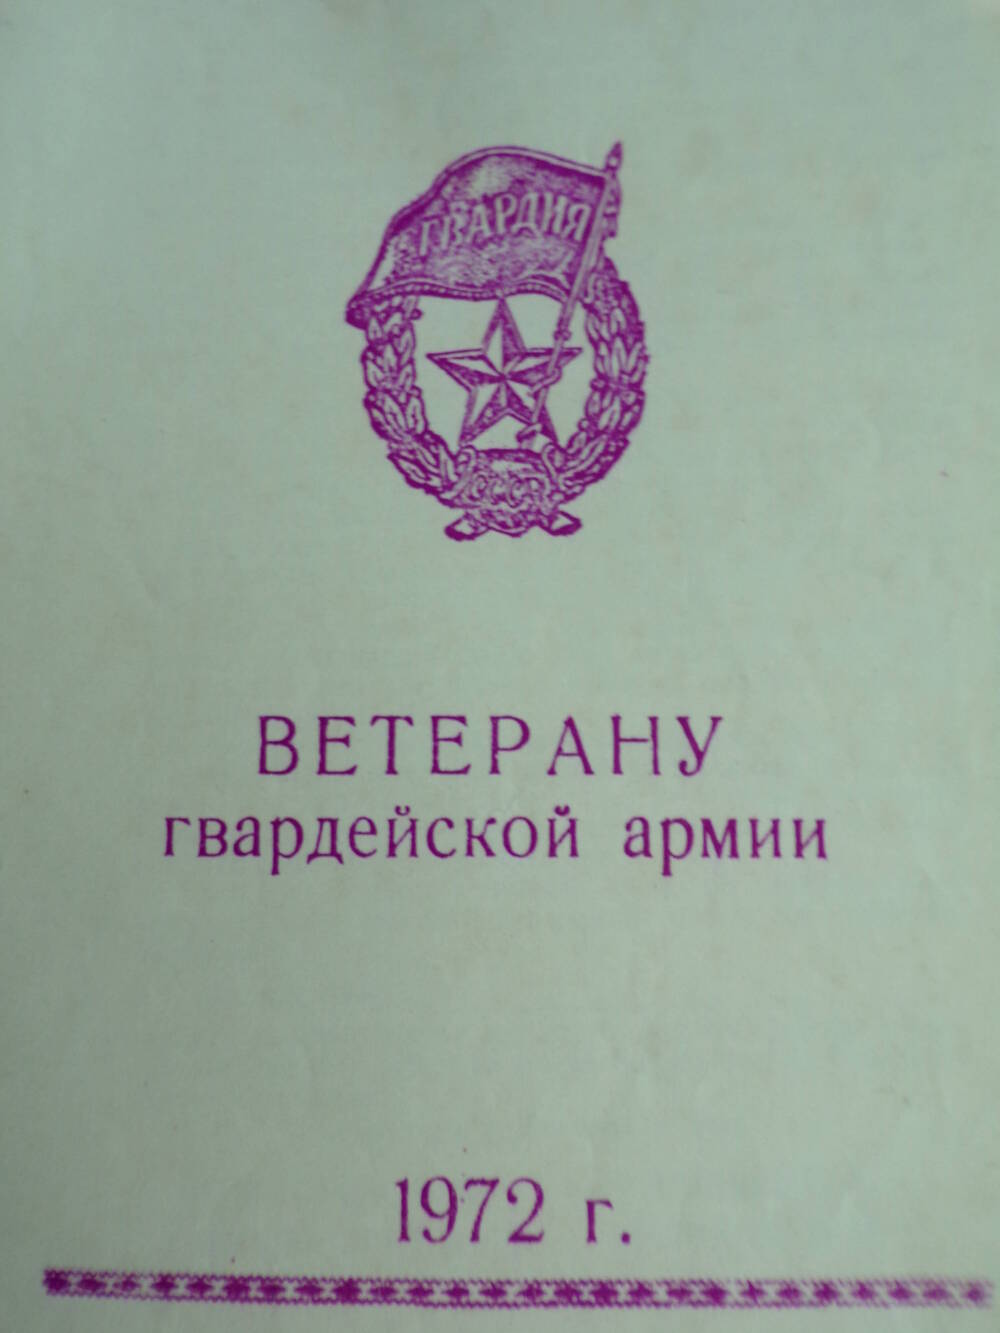 Пожелания Ветерану гвардейской армии. 1972 г.